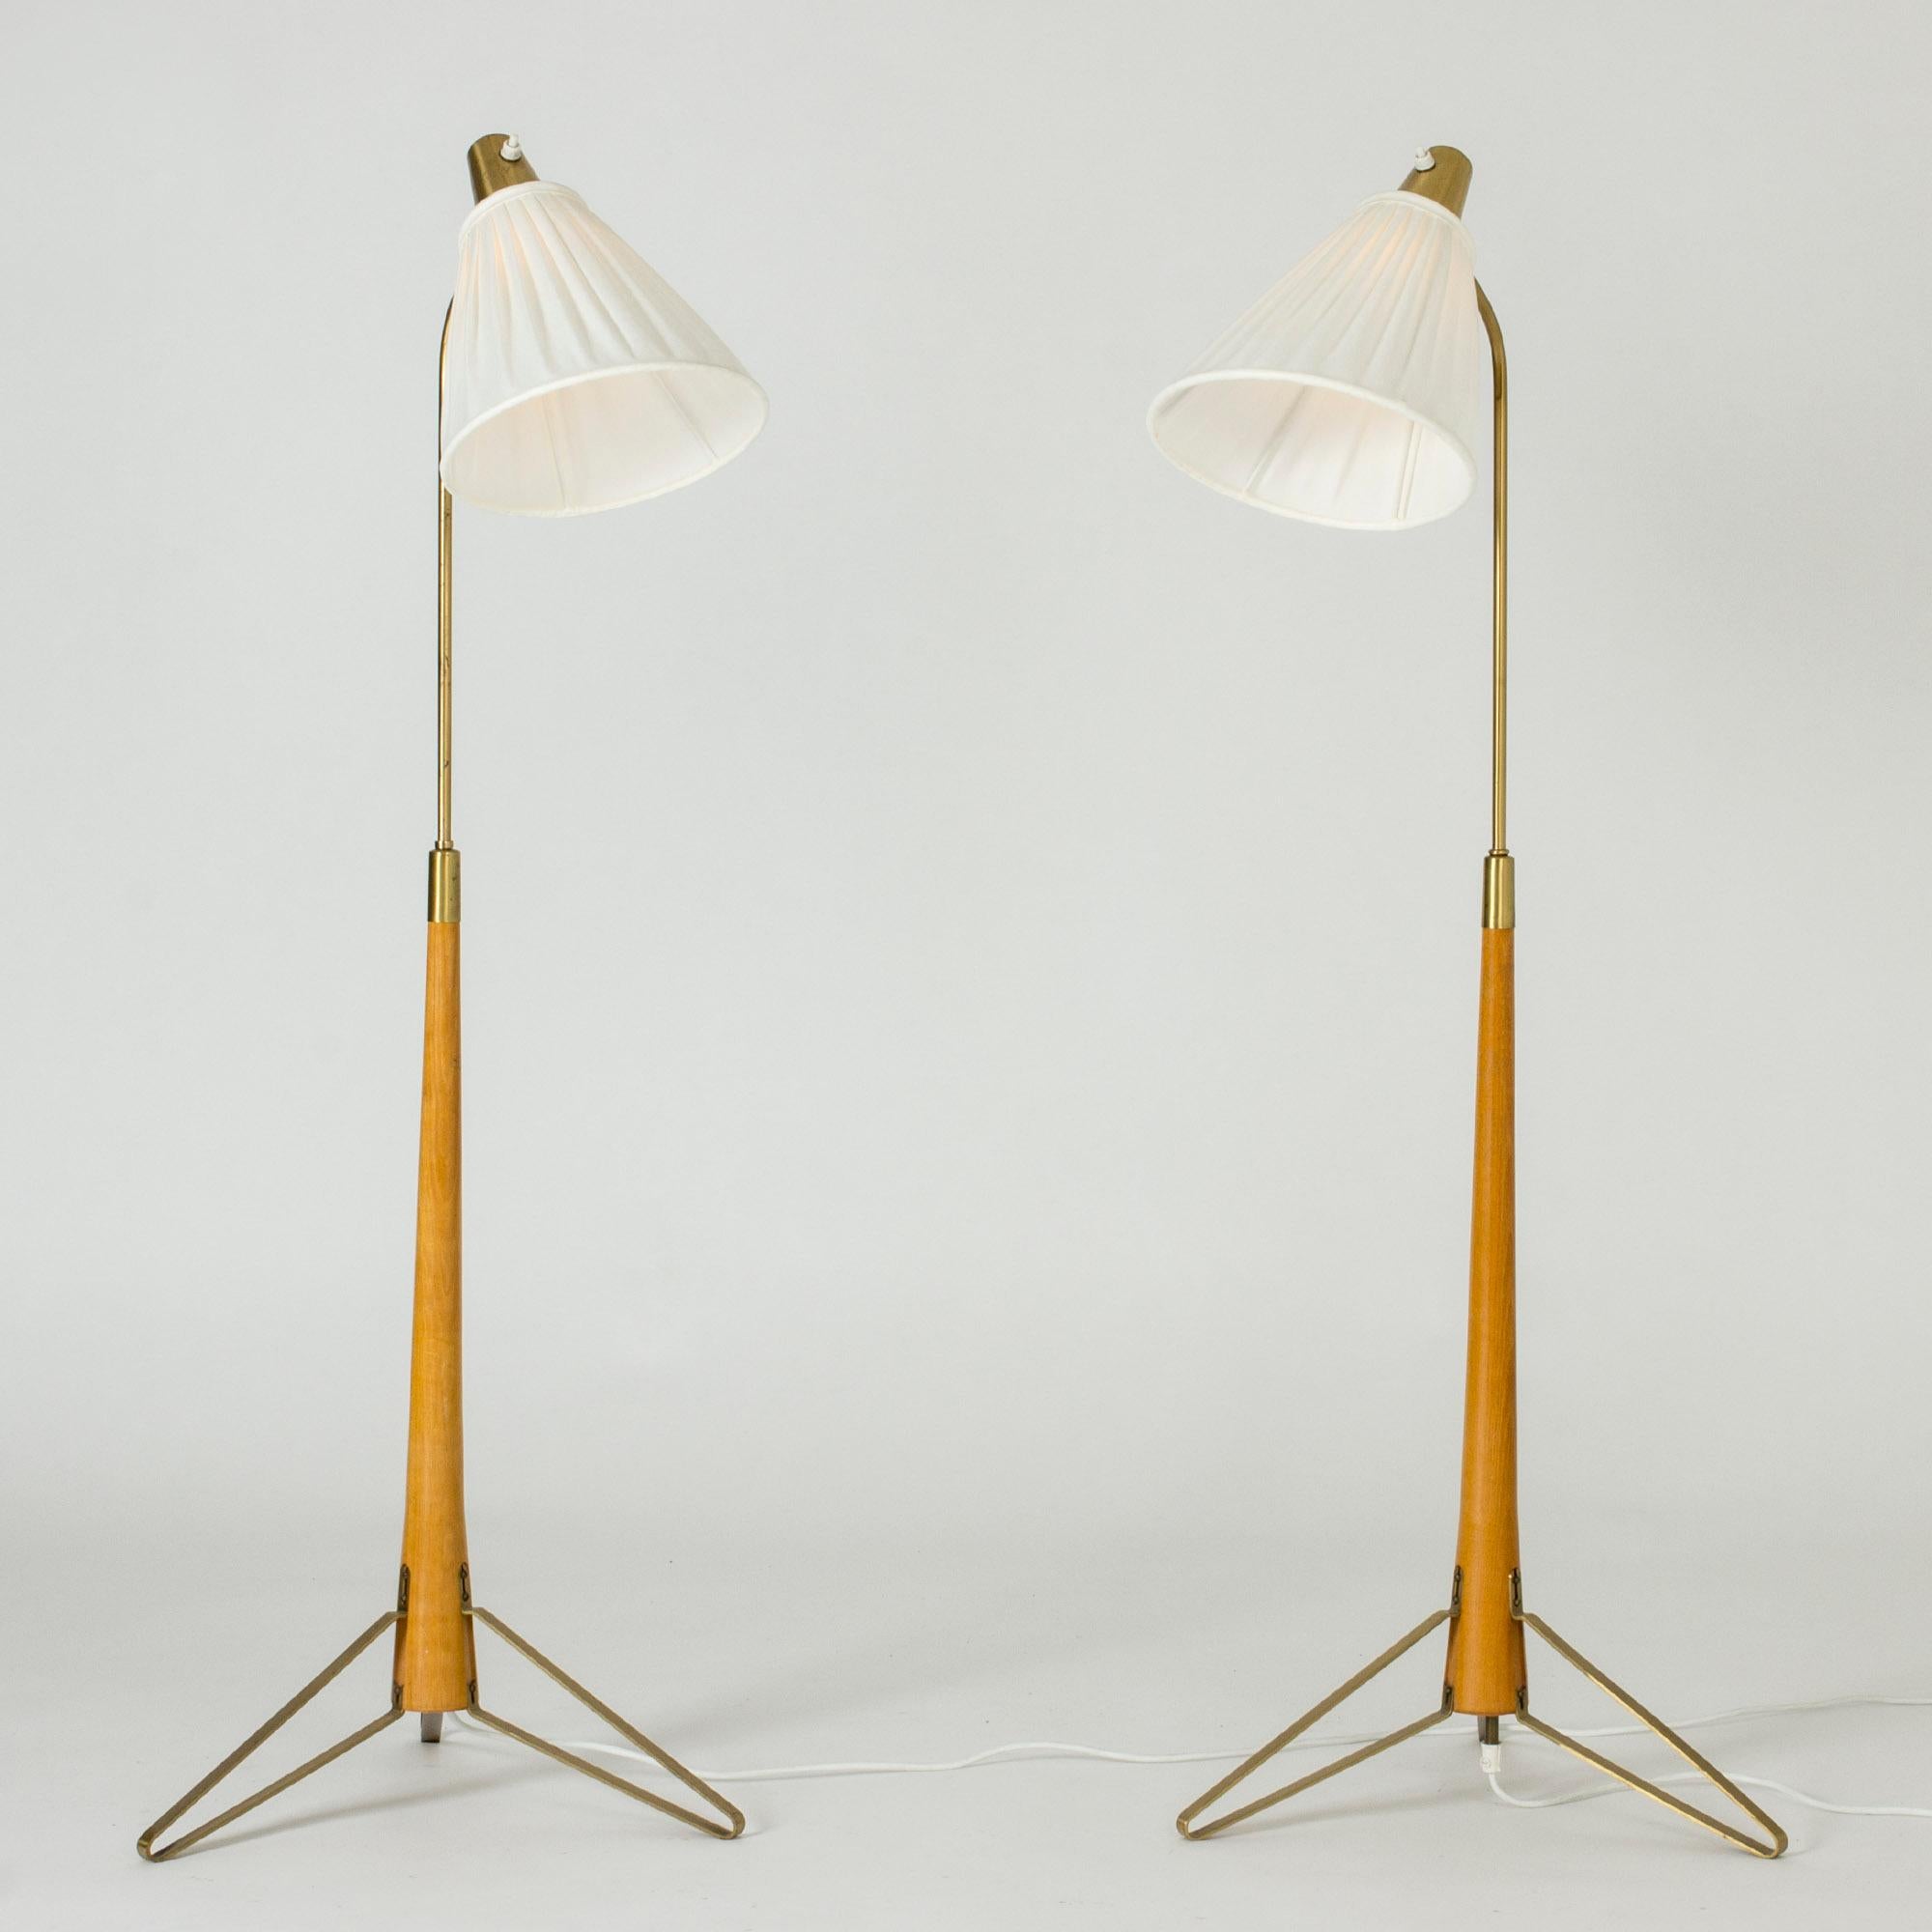 Ein Paar Stehlampen aus Messing von Hans Bergström, mit Buchenholzgriffen und kunstvoll gefalteten Messingfüßen.

Die Lampen haben die gleiche niedrigste Höhe, 116 cm, können aber auf unterschiedliche Höhen eingestellt werden, 137,5 und 146,5